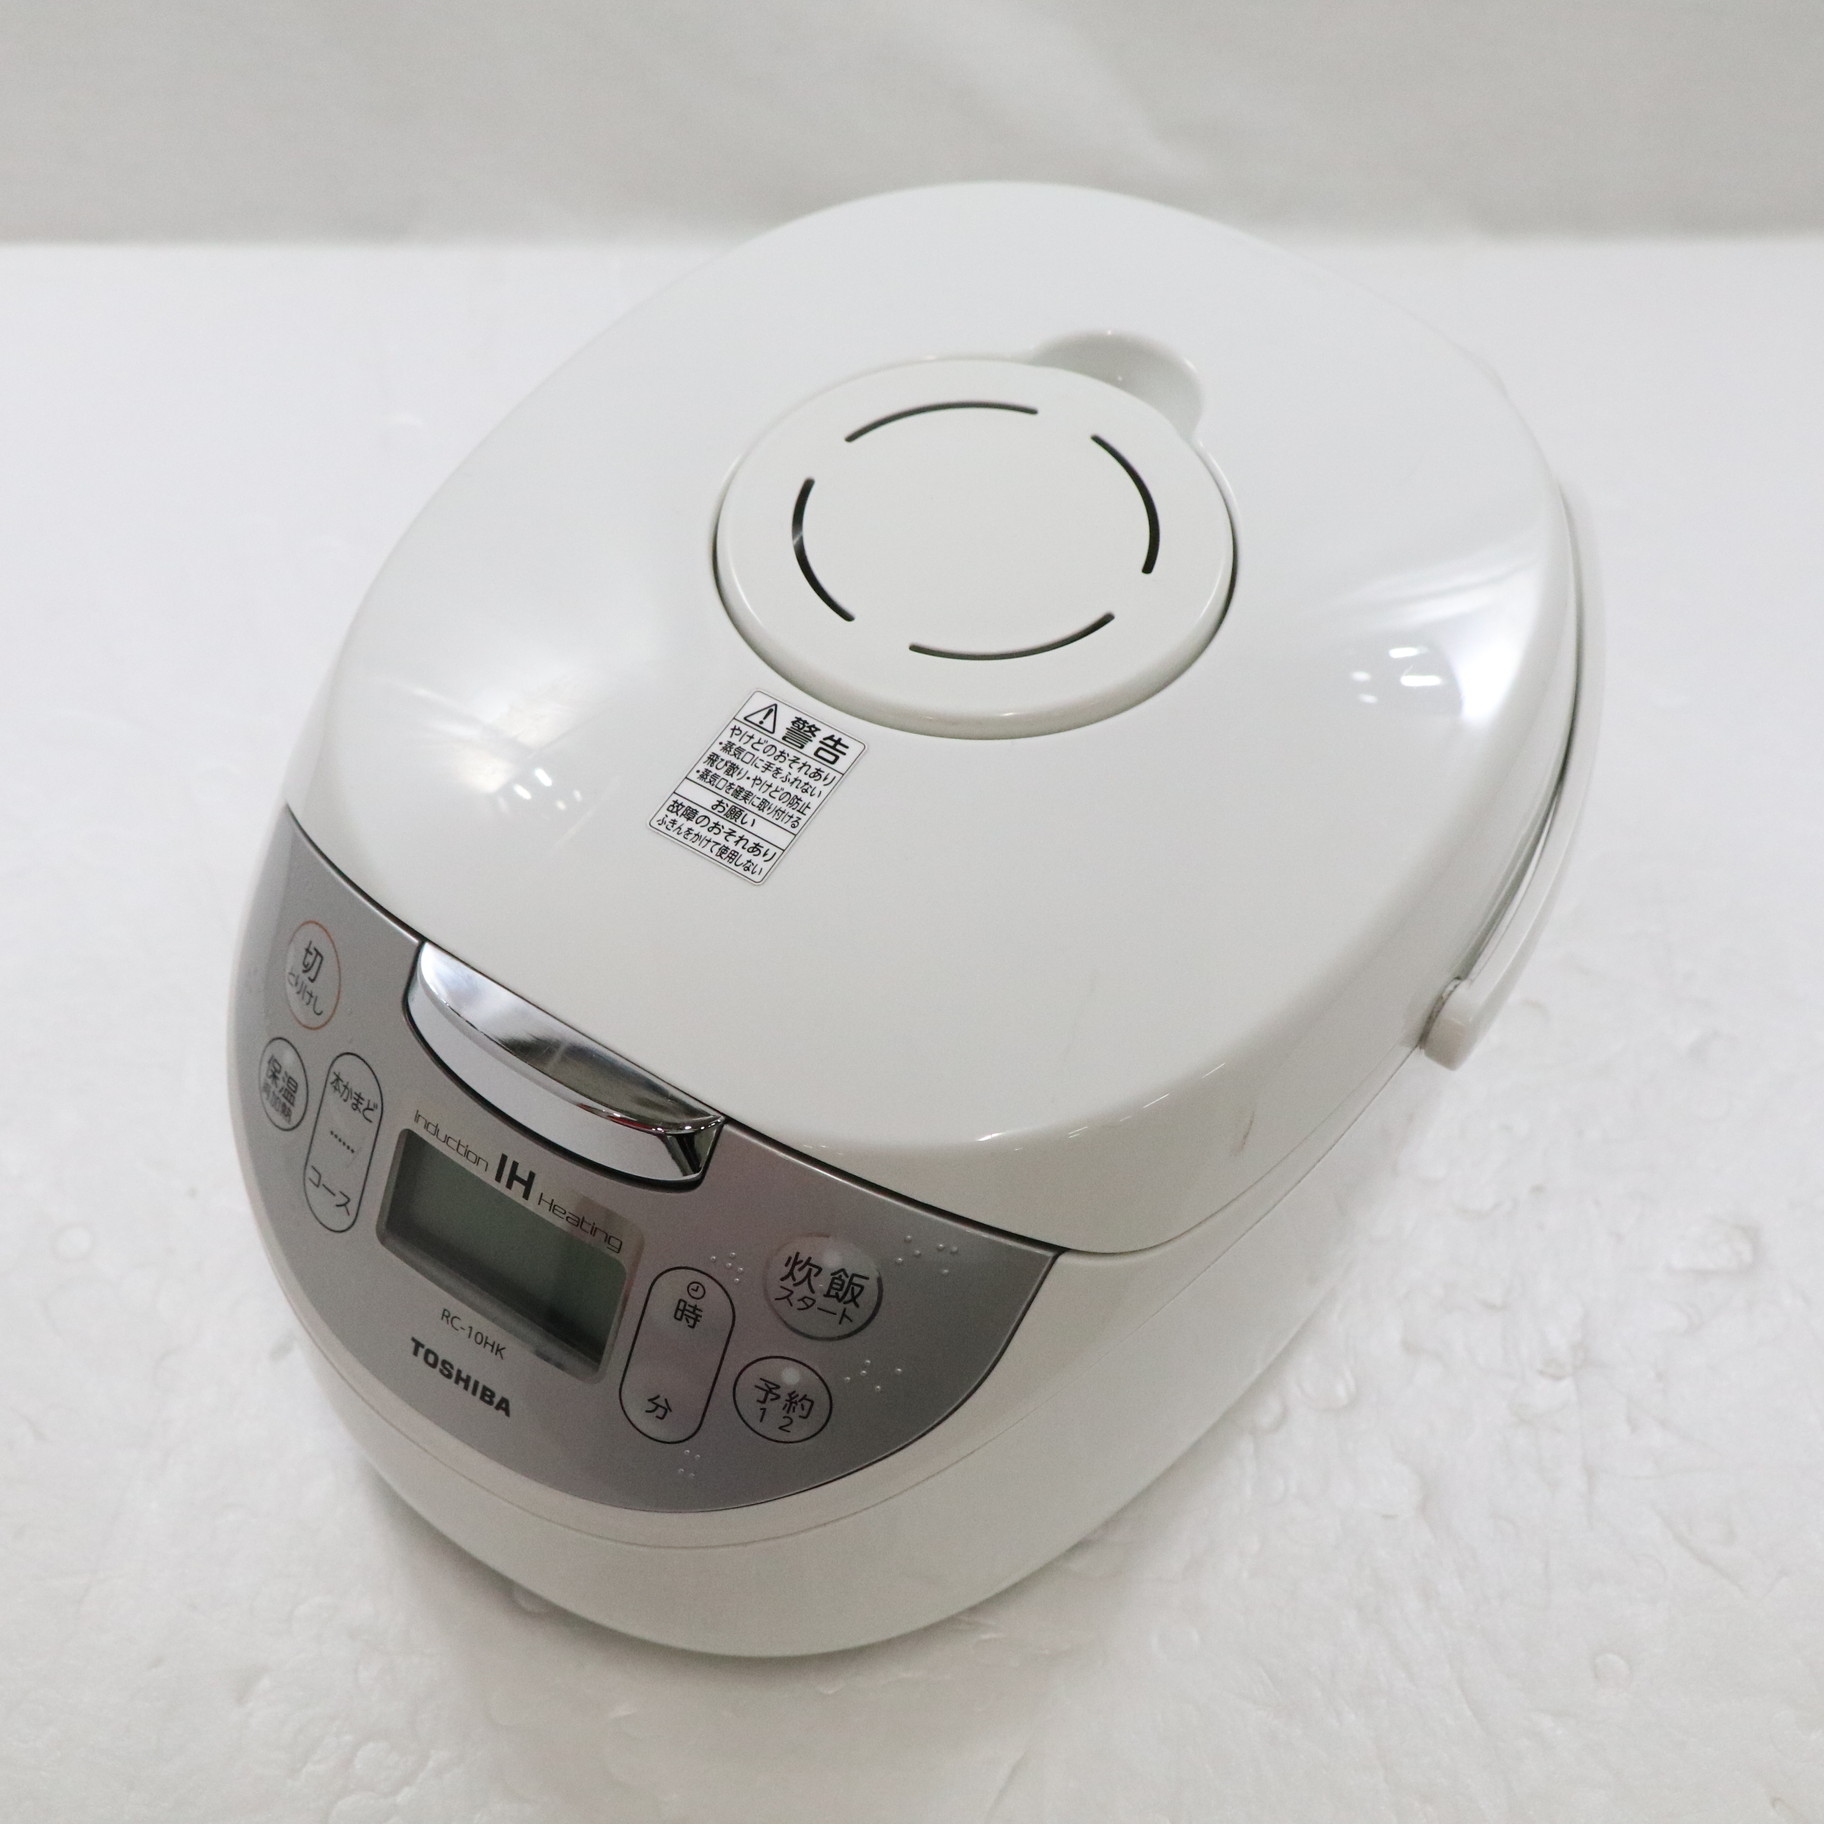 東芝 炊飯器 RC10HK (5.5合炊き)保証書 取扱説明書付き - 宮崎県の家電